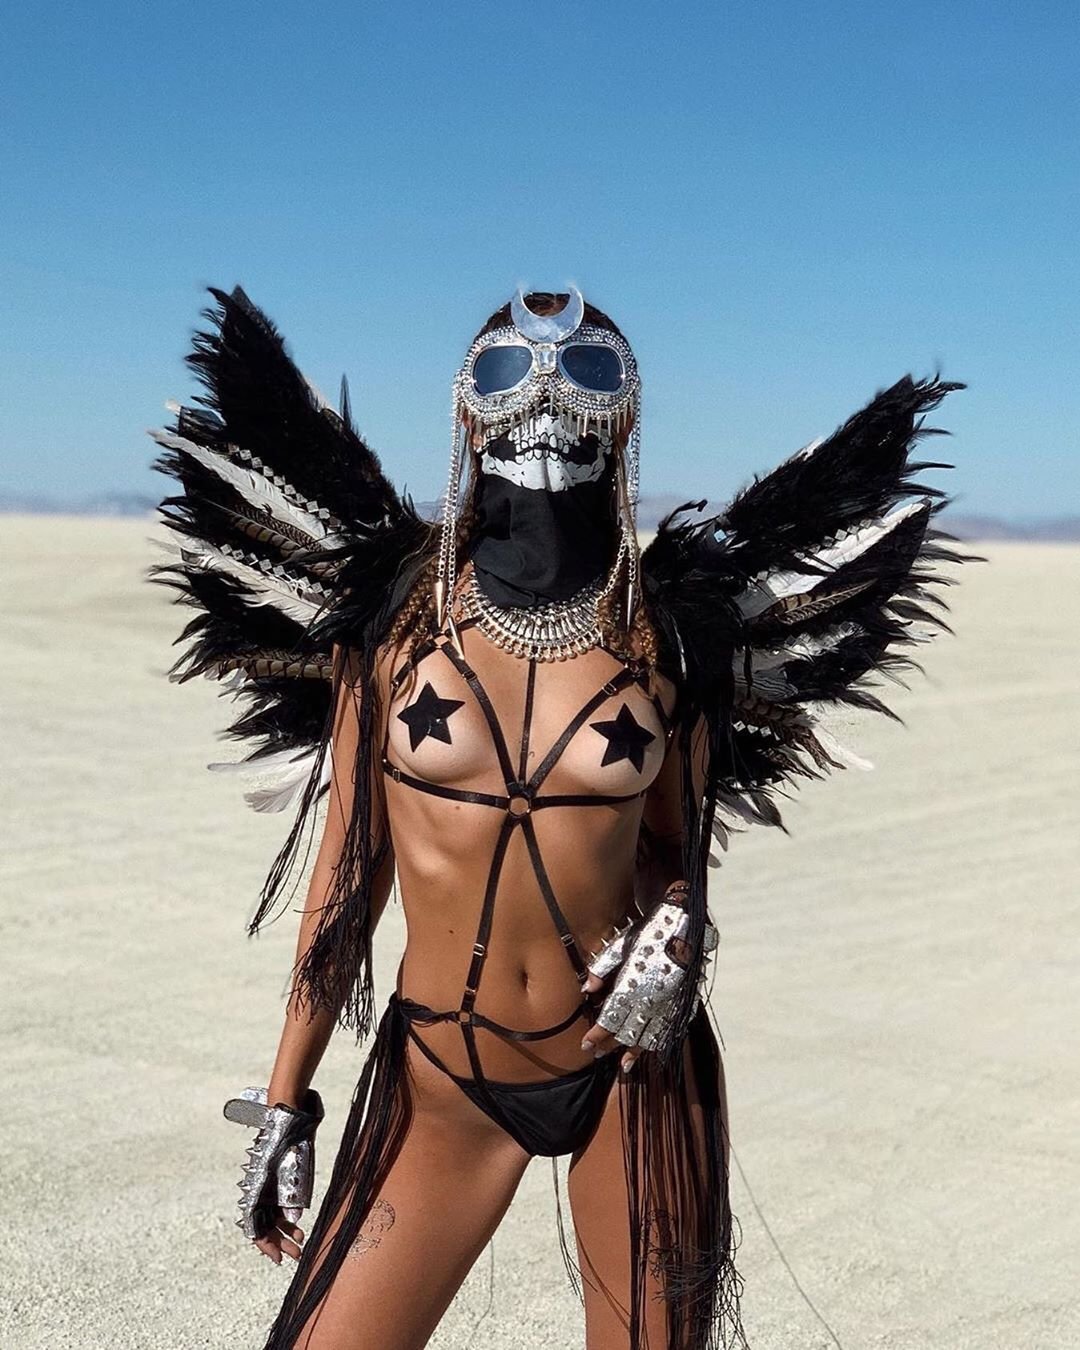 Нереальной красоты скульптуры и голые тела на фестивале Burning Man 2019 - фото 448436